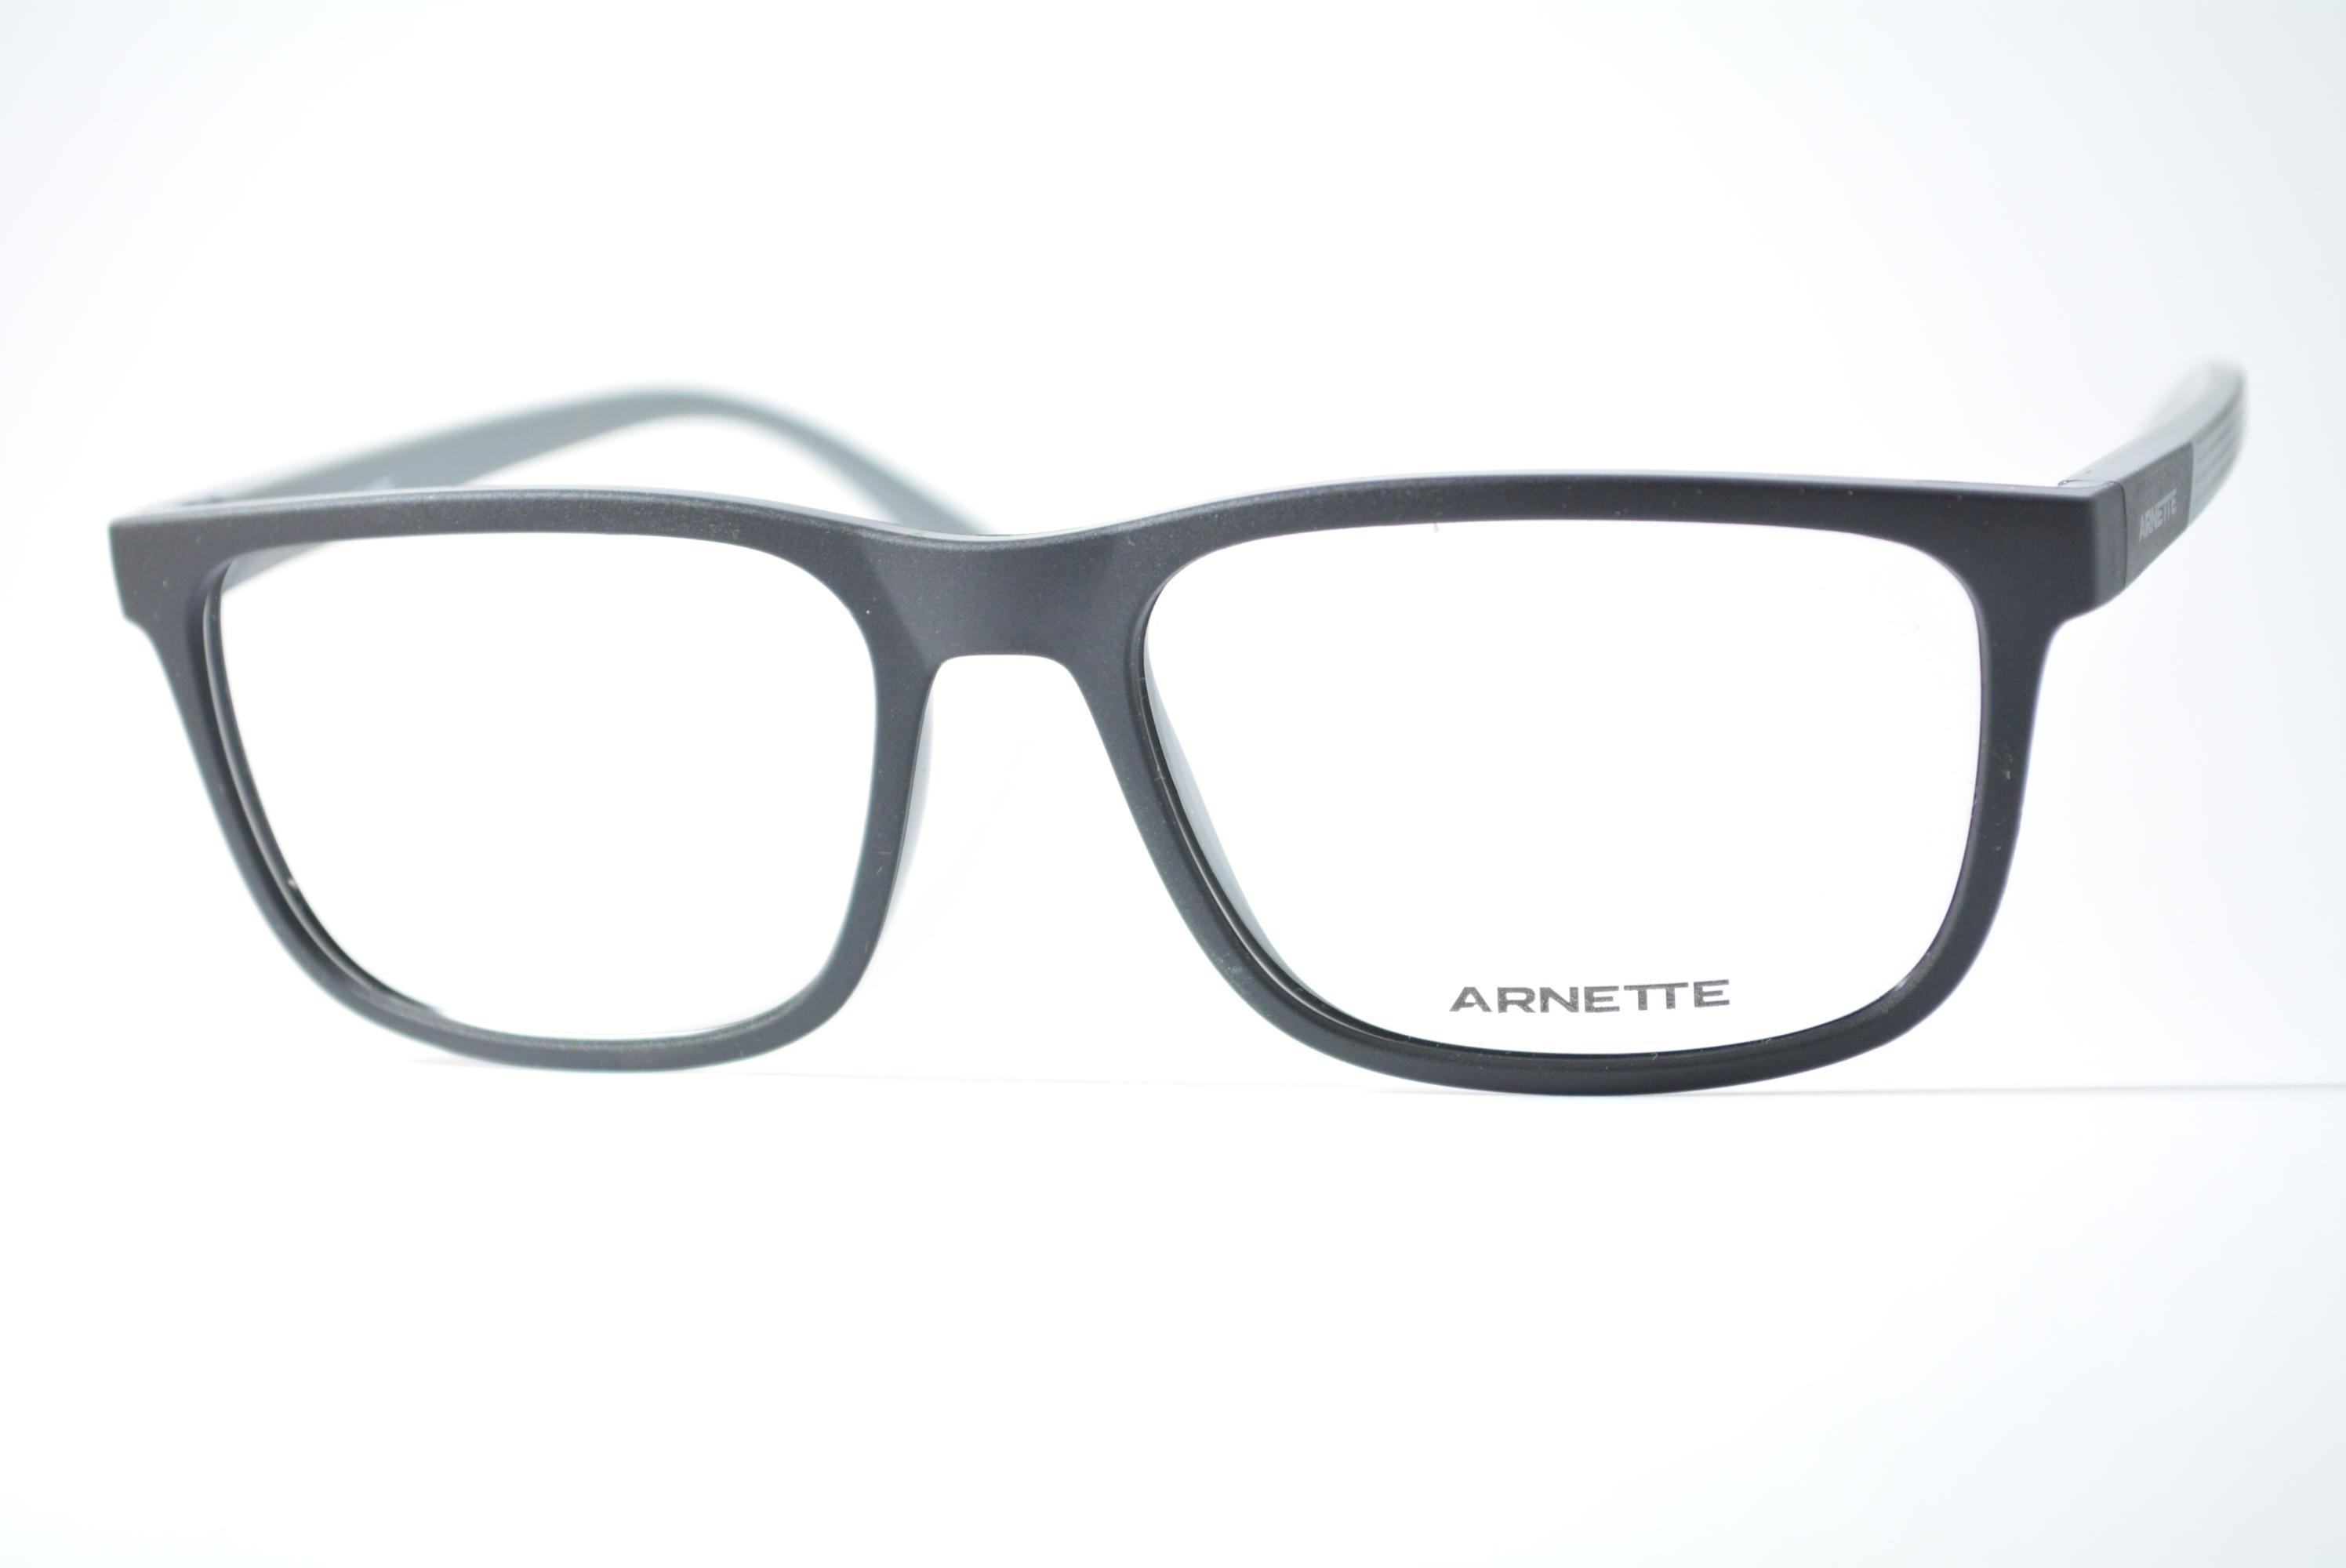 armação de óculos Arnette mod an7236L 2886